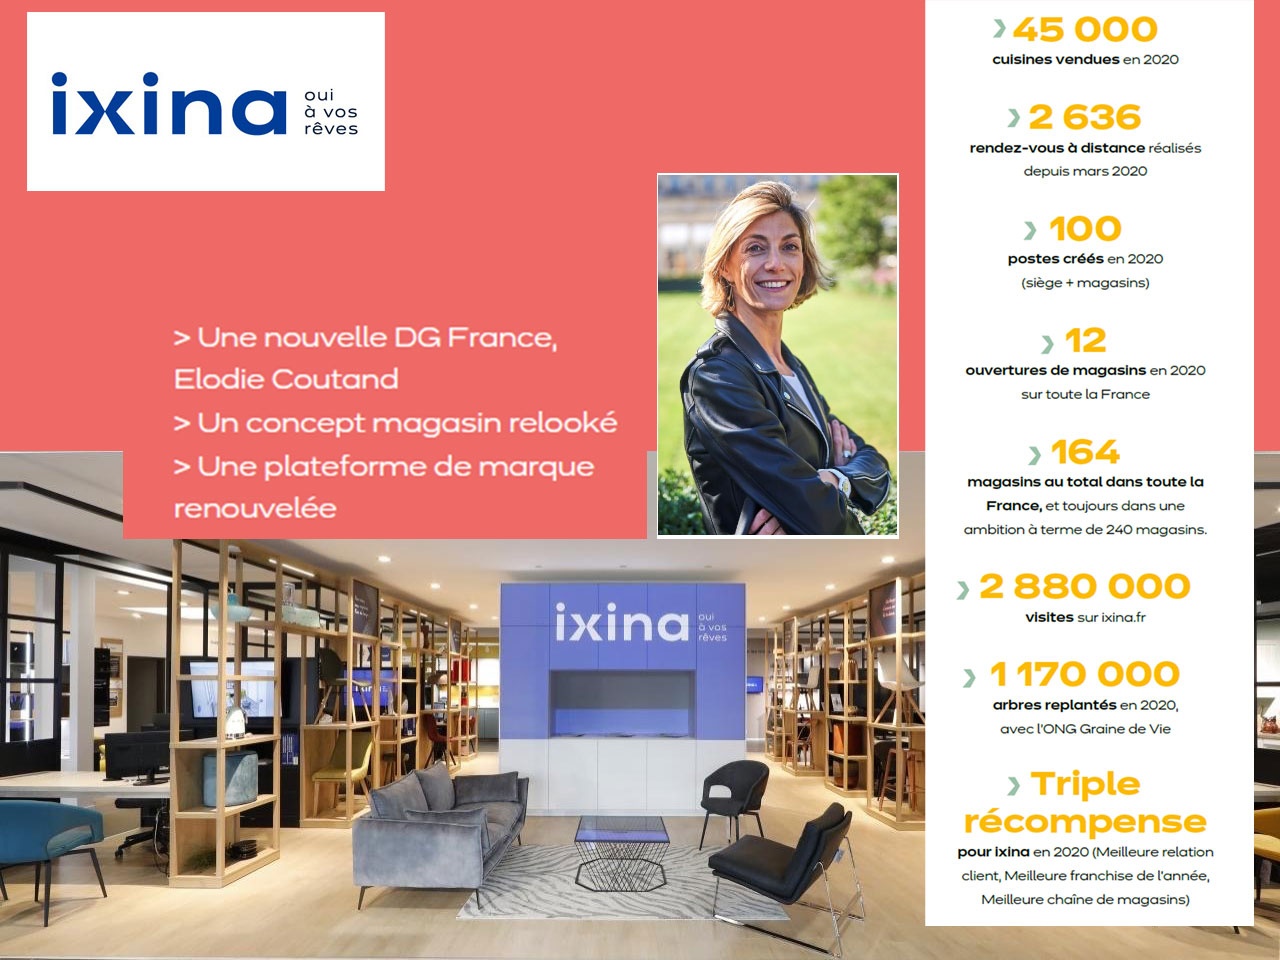 IXINA revient sur son année 2020, au bilan positif